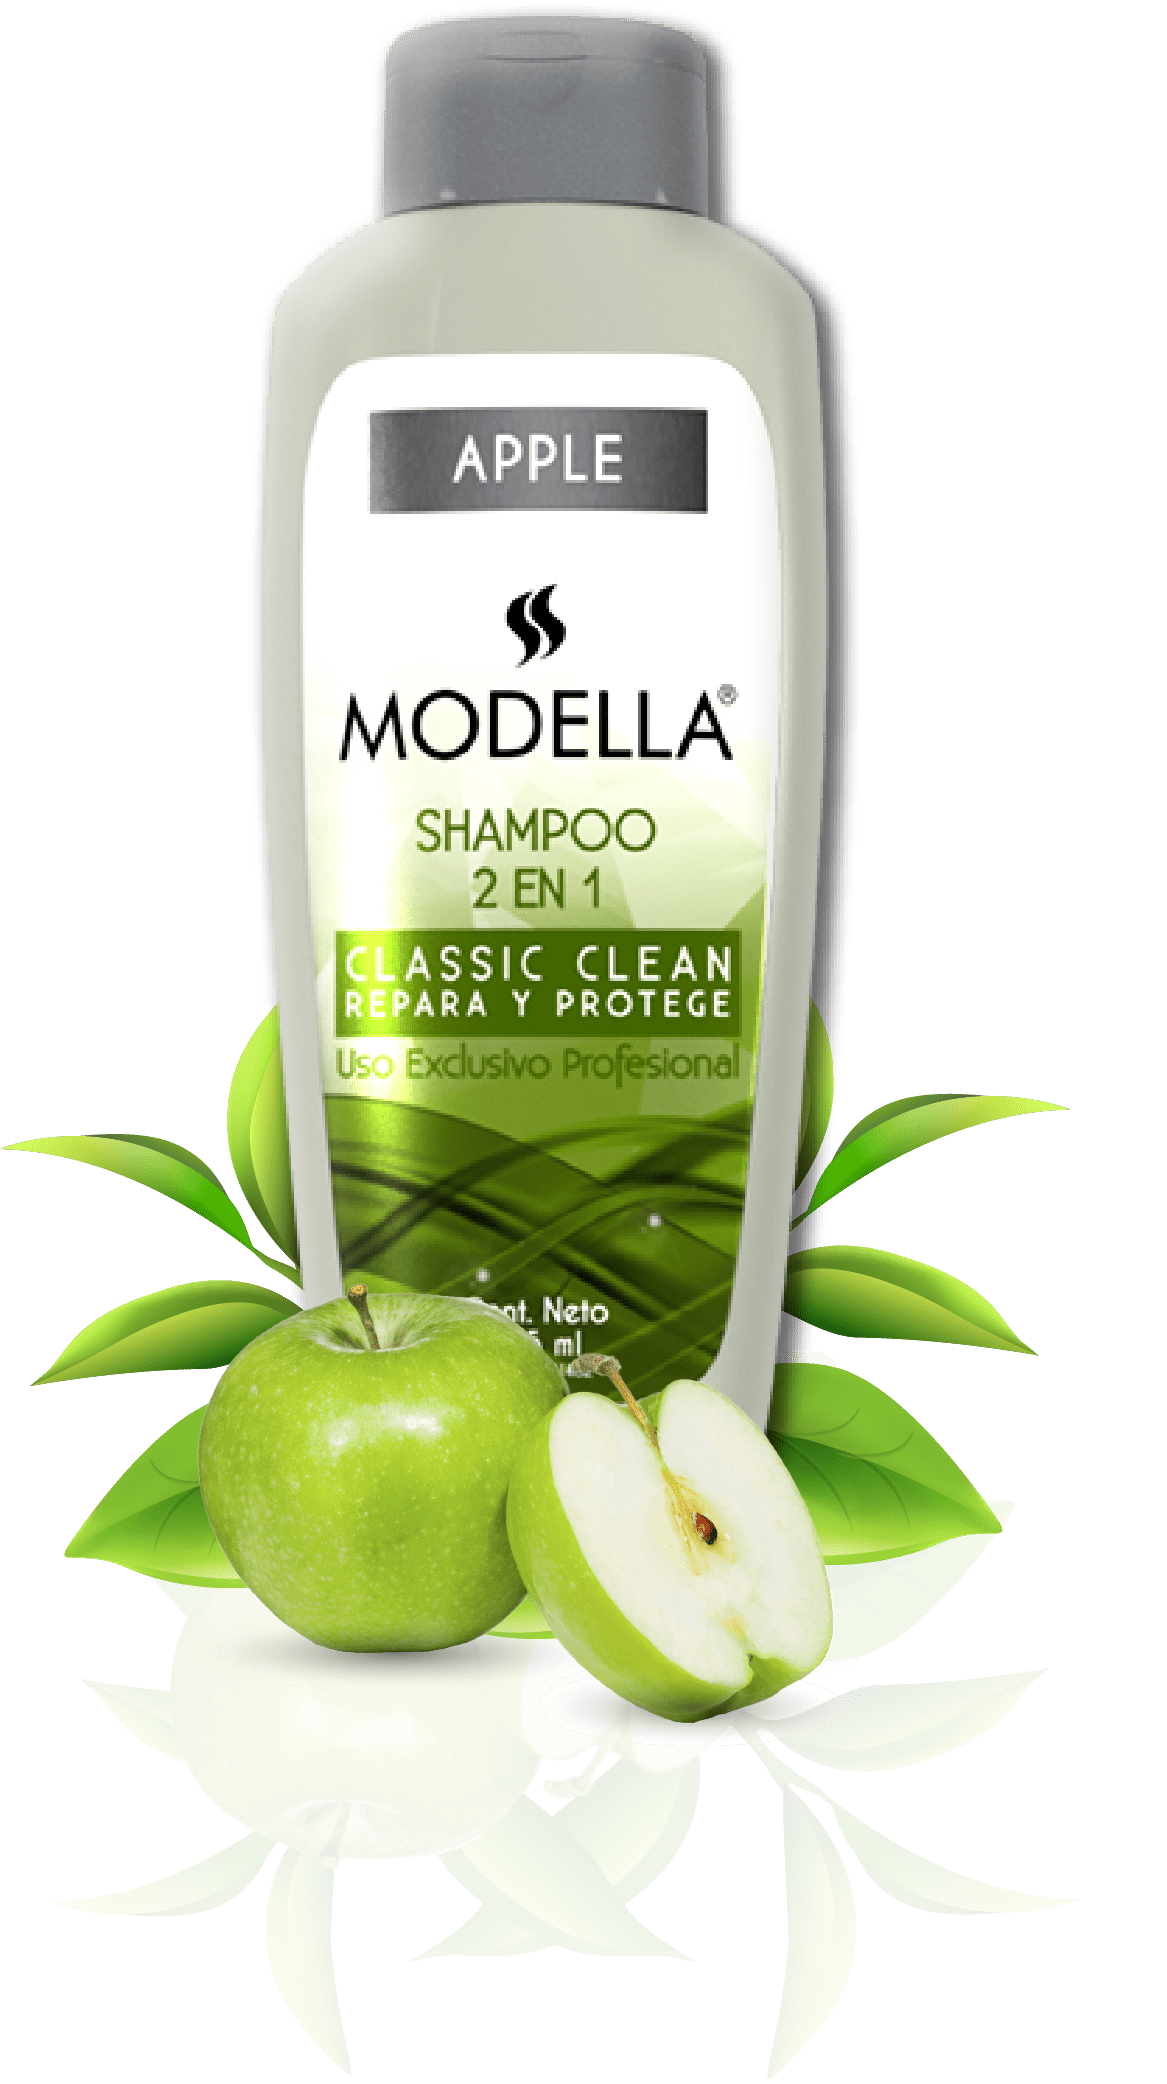 imagen-modella-shampoo-apple-2-en-1-repara-protege